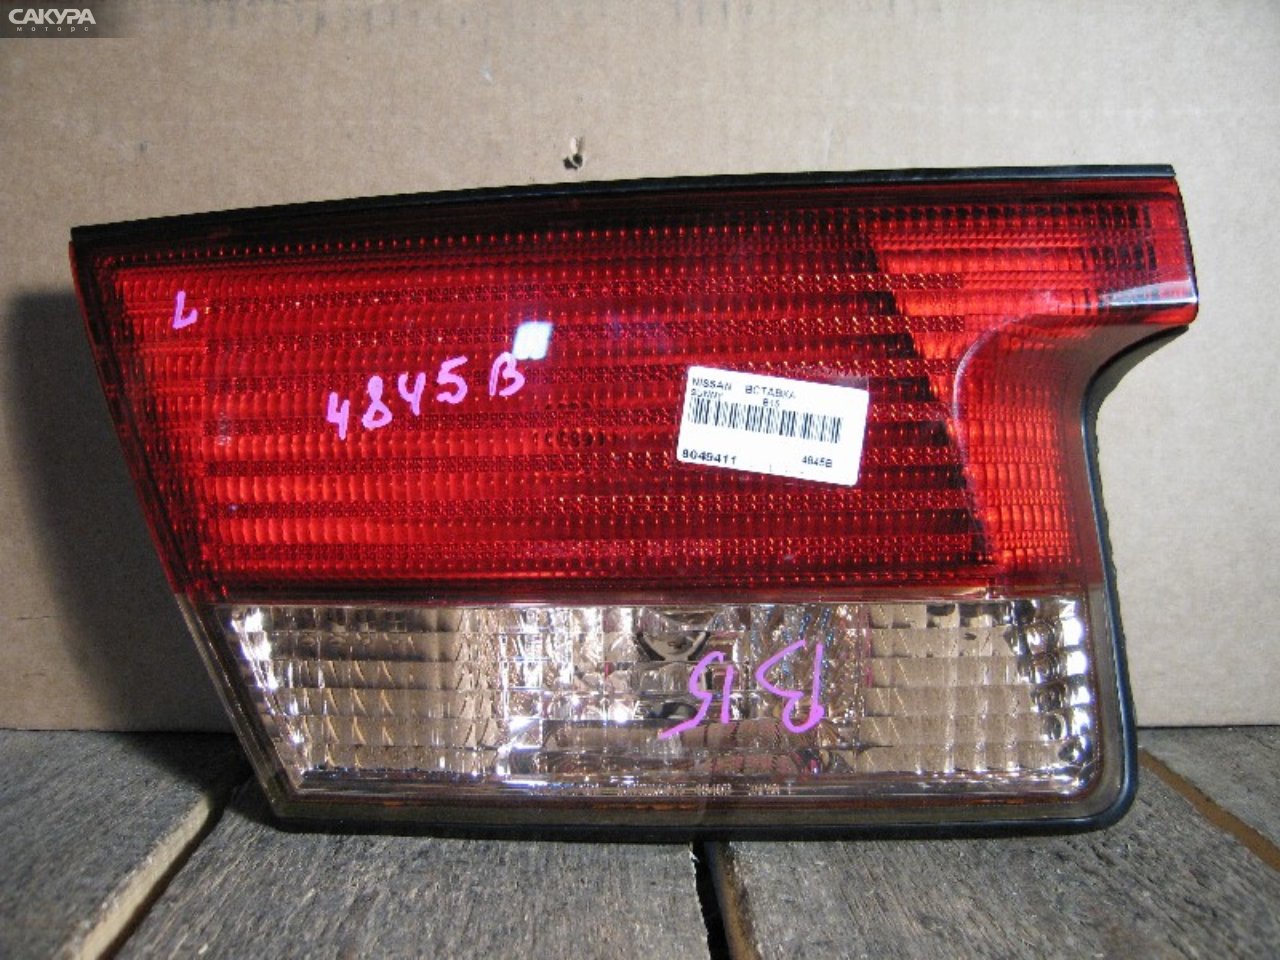 Фонарь вставка багажника левый Nissan Sunny B15 4845B: купить в Сакура Абакан.